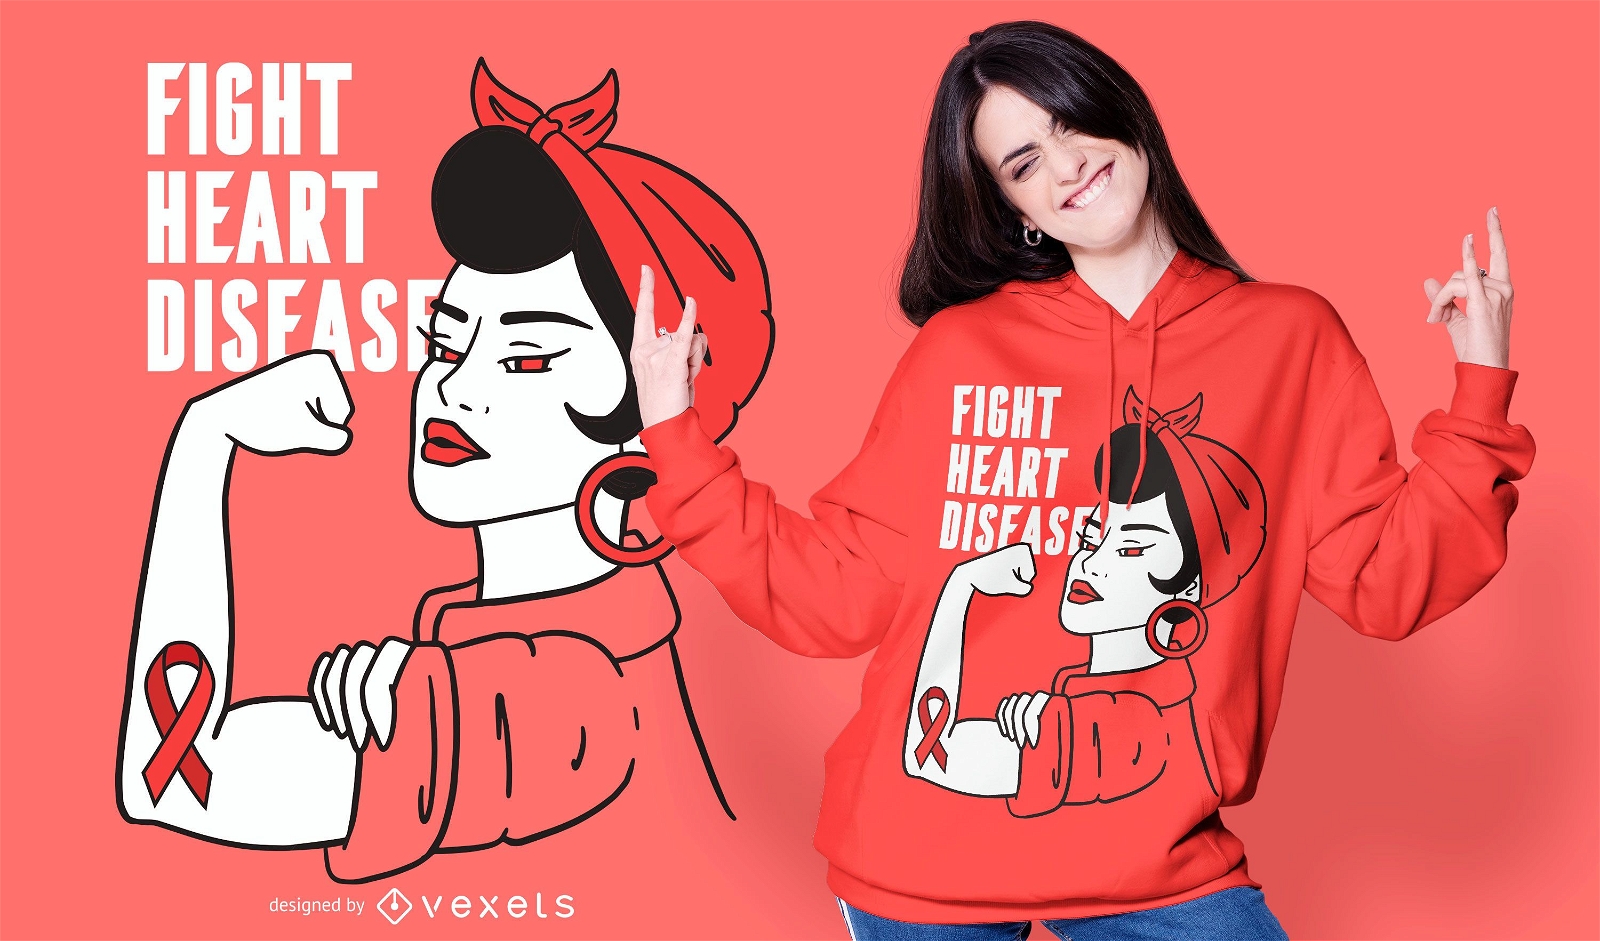 Fight heart disease t-shirt design